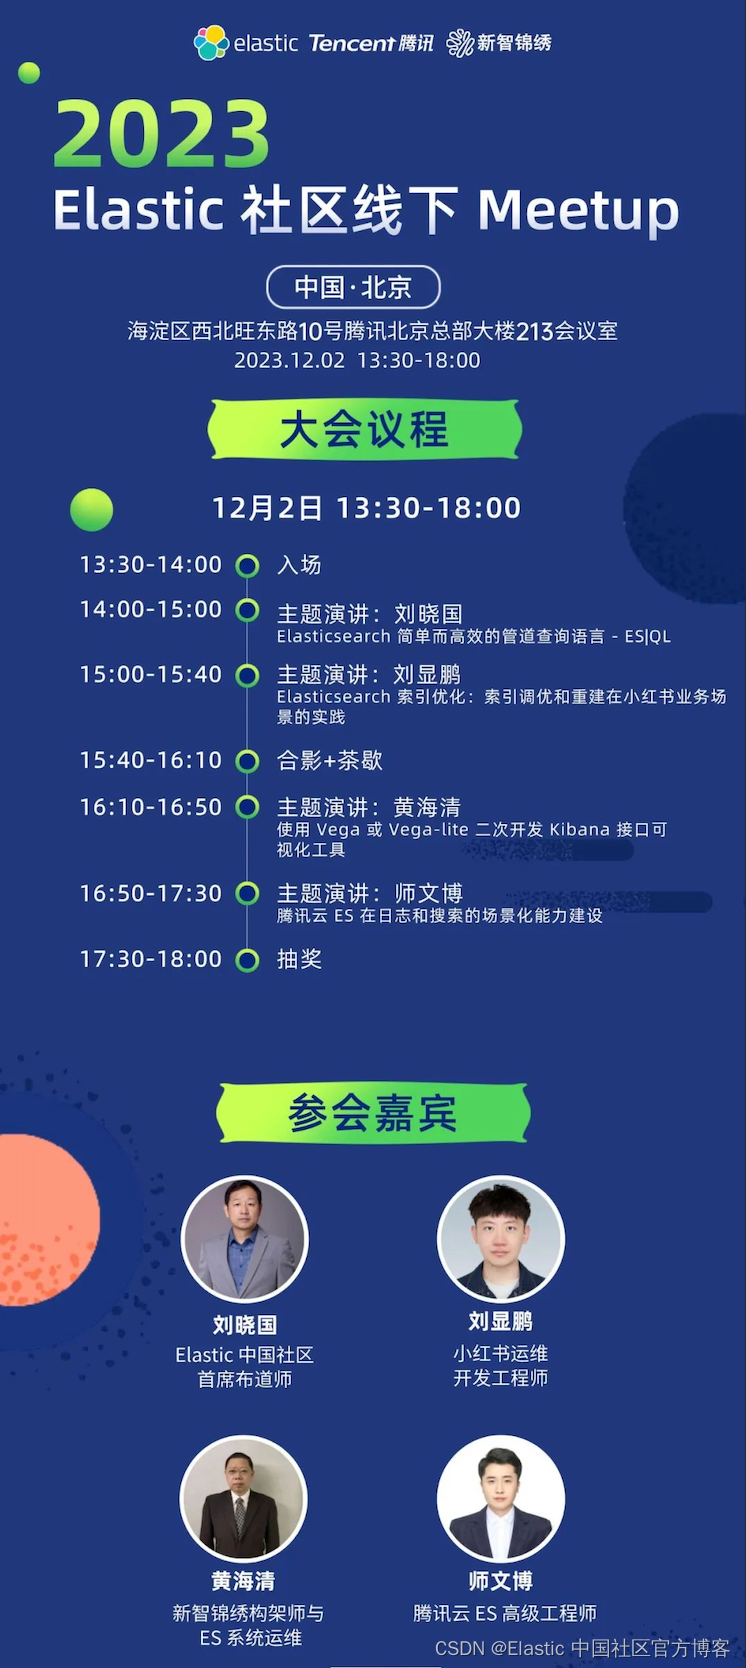 【活动通知】2023 Elastic Meetup 北京站将于12月2日下午1点30在北京召开